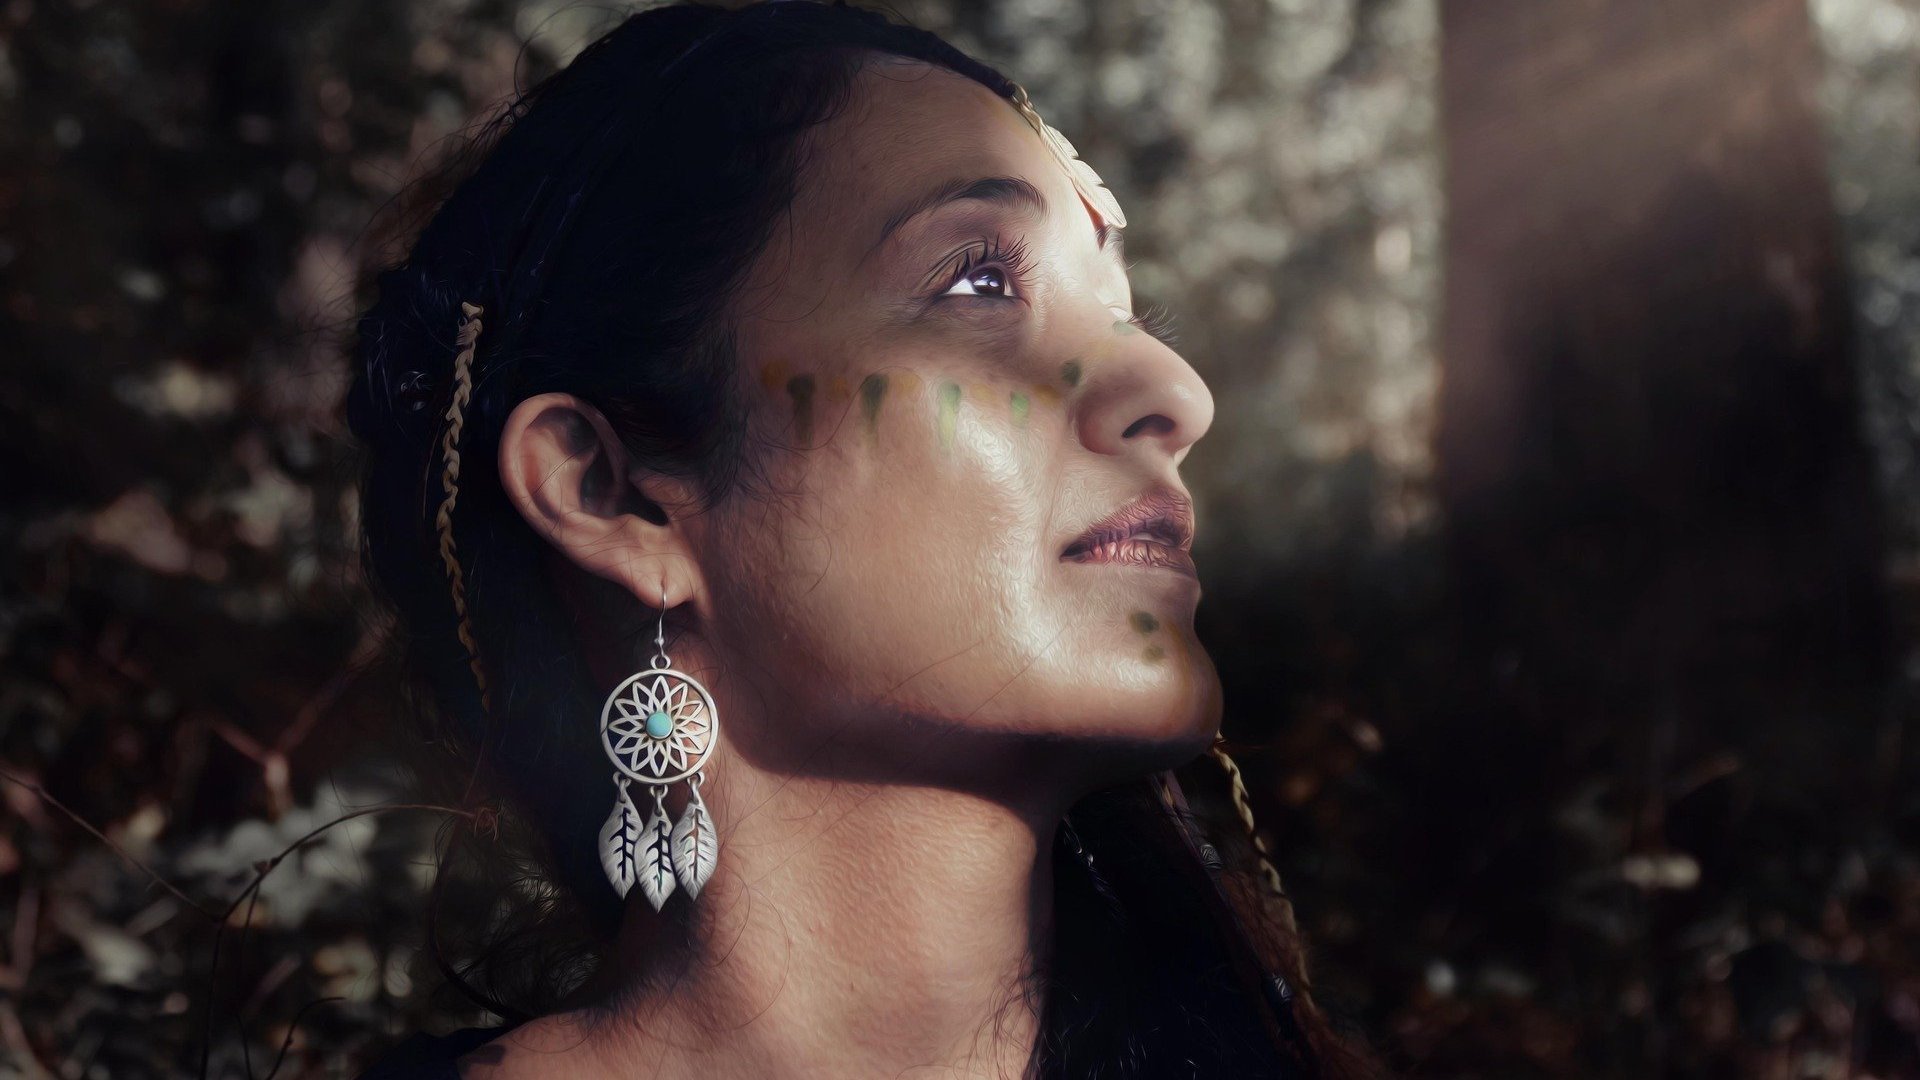 Uma mulher morena com cocar indígena, pintura arquetípica indígena e brincos .